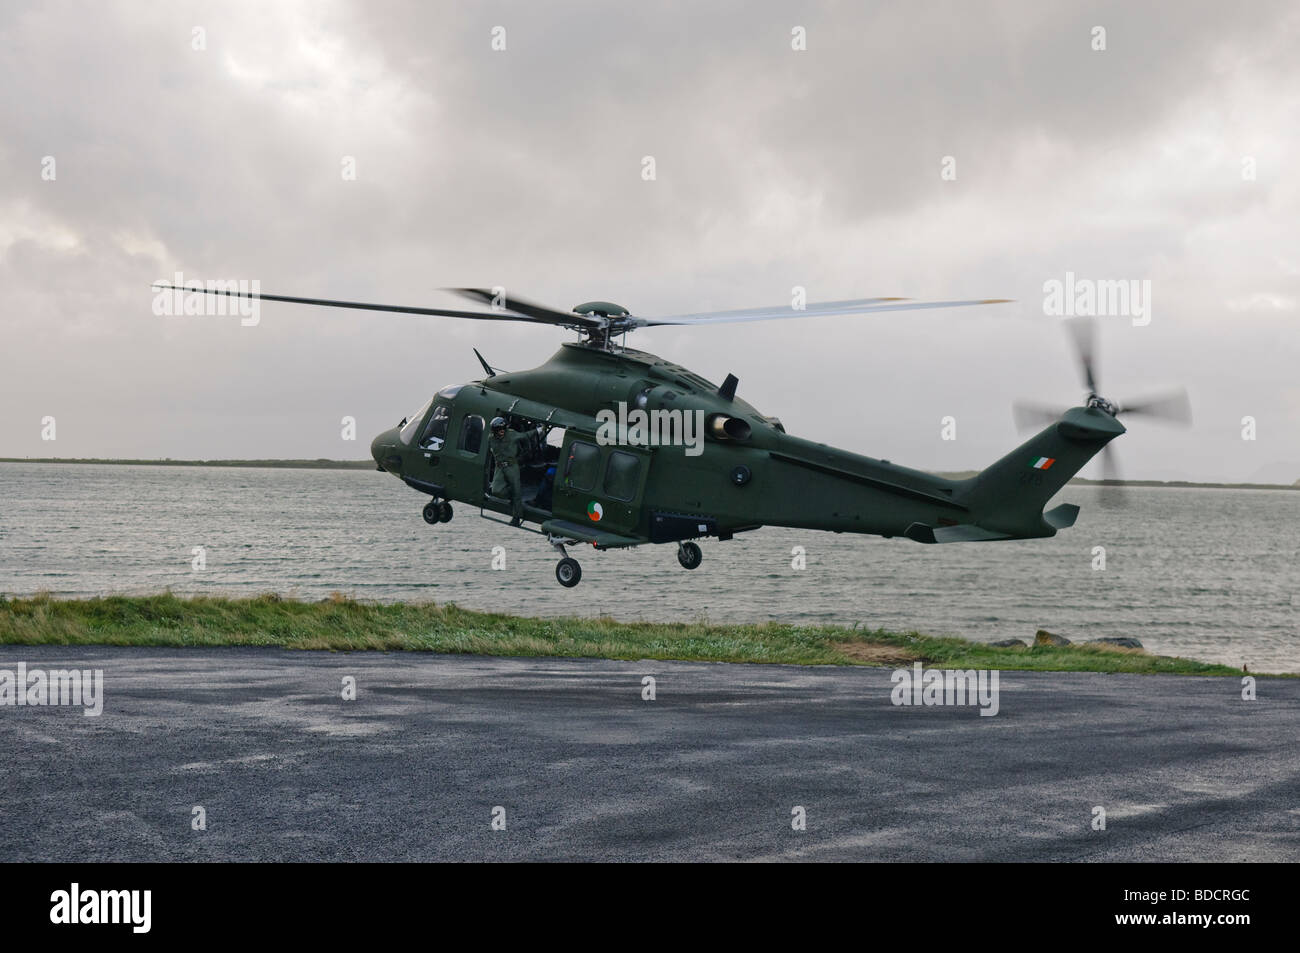 Agusta Westland AW139 helicóptero perteneciente a la Irish Air Corps, cerca a la tierra Foto de stock